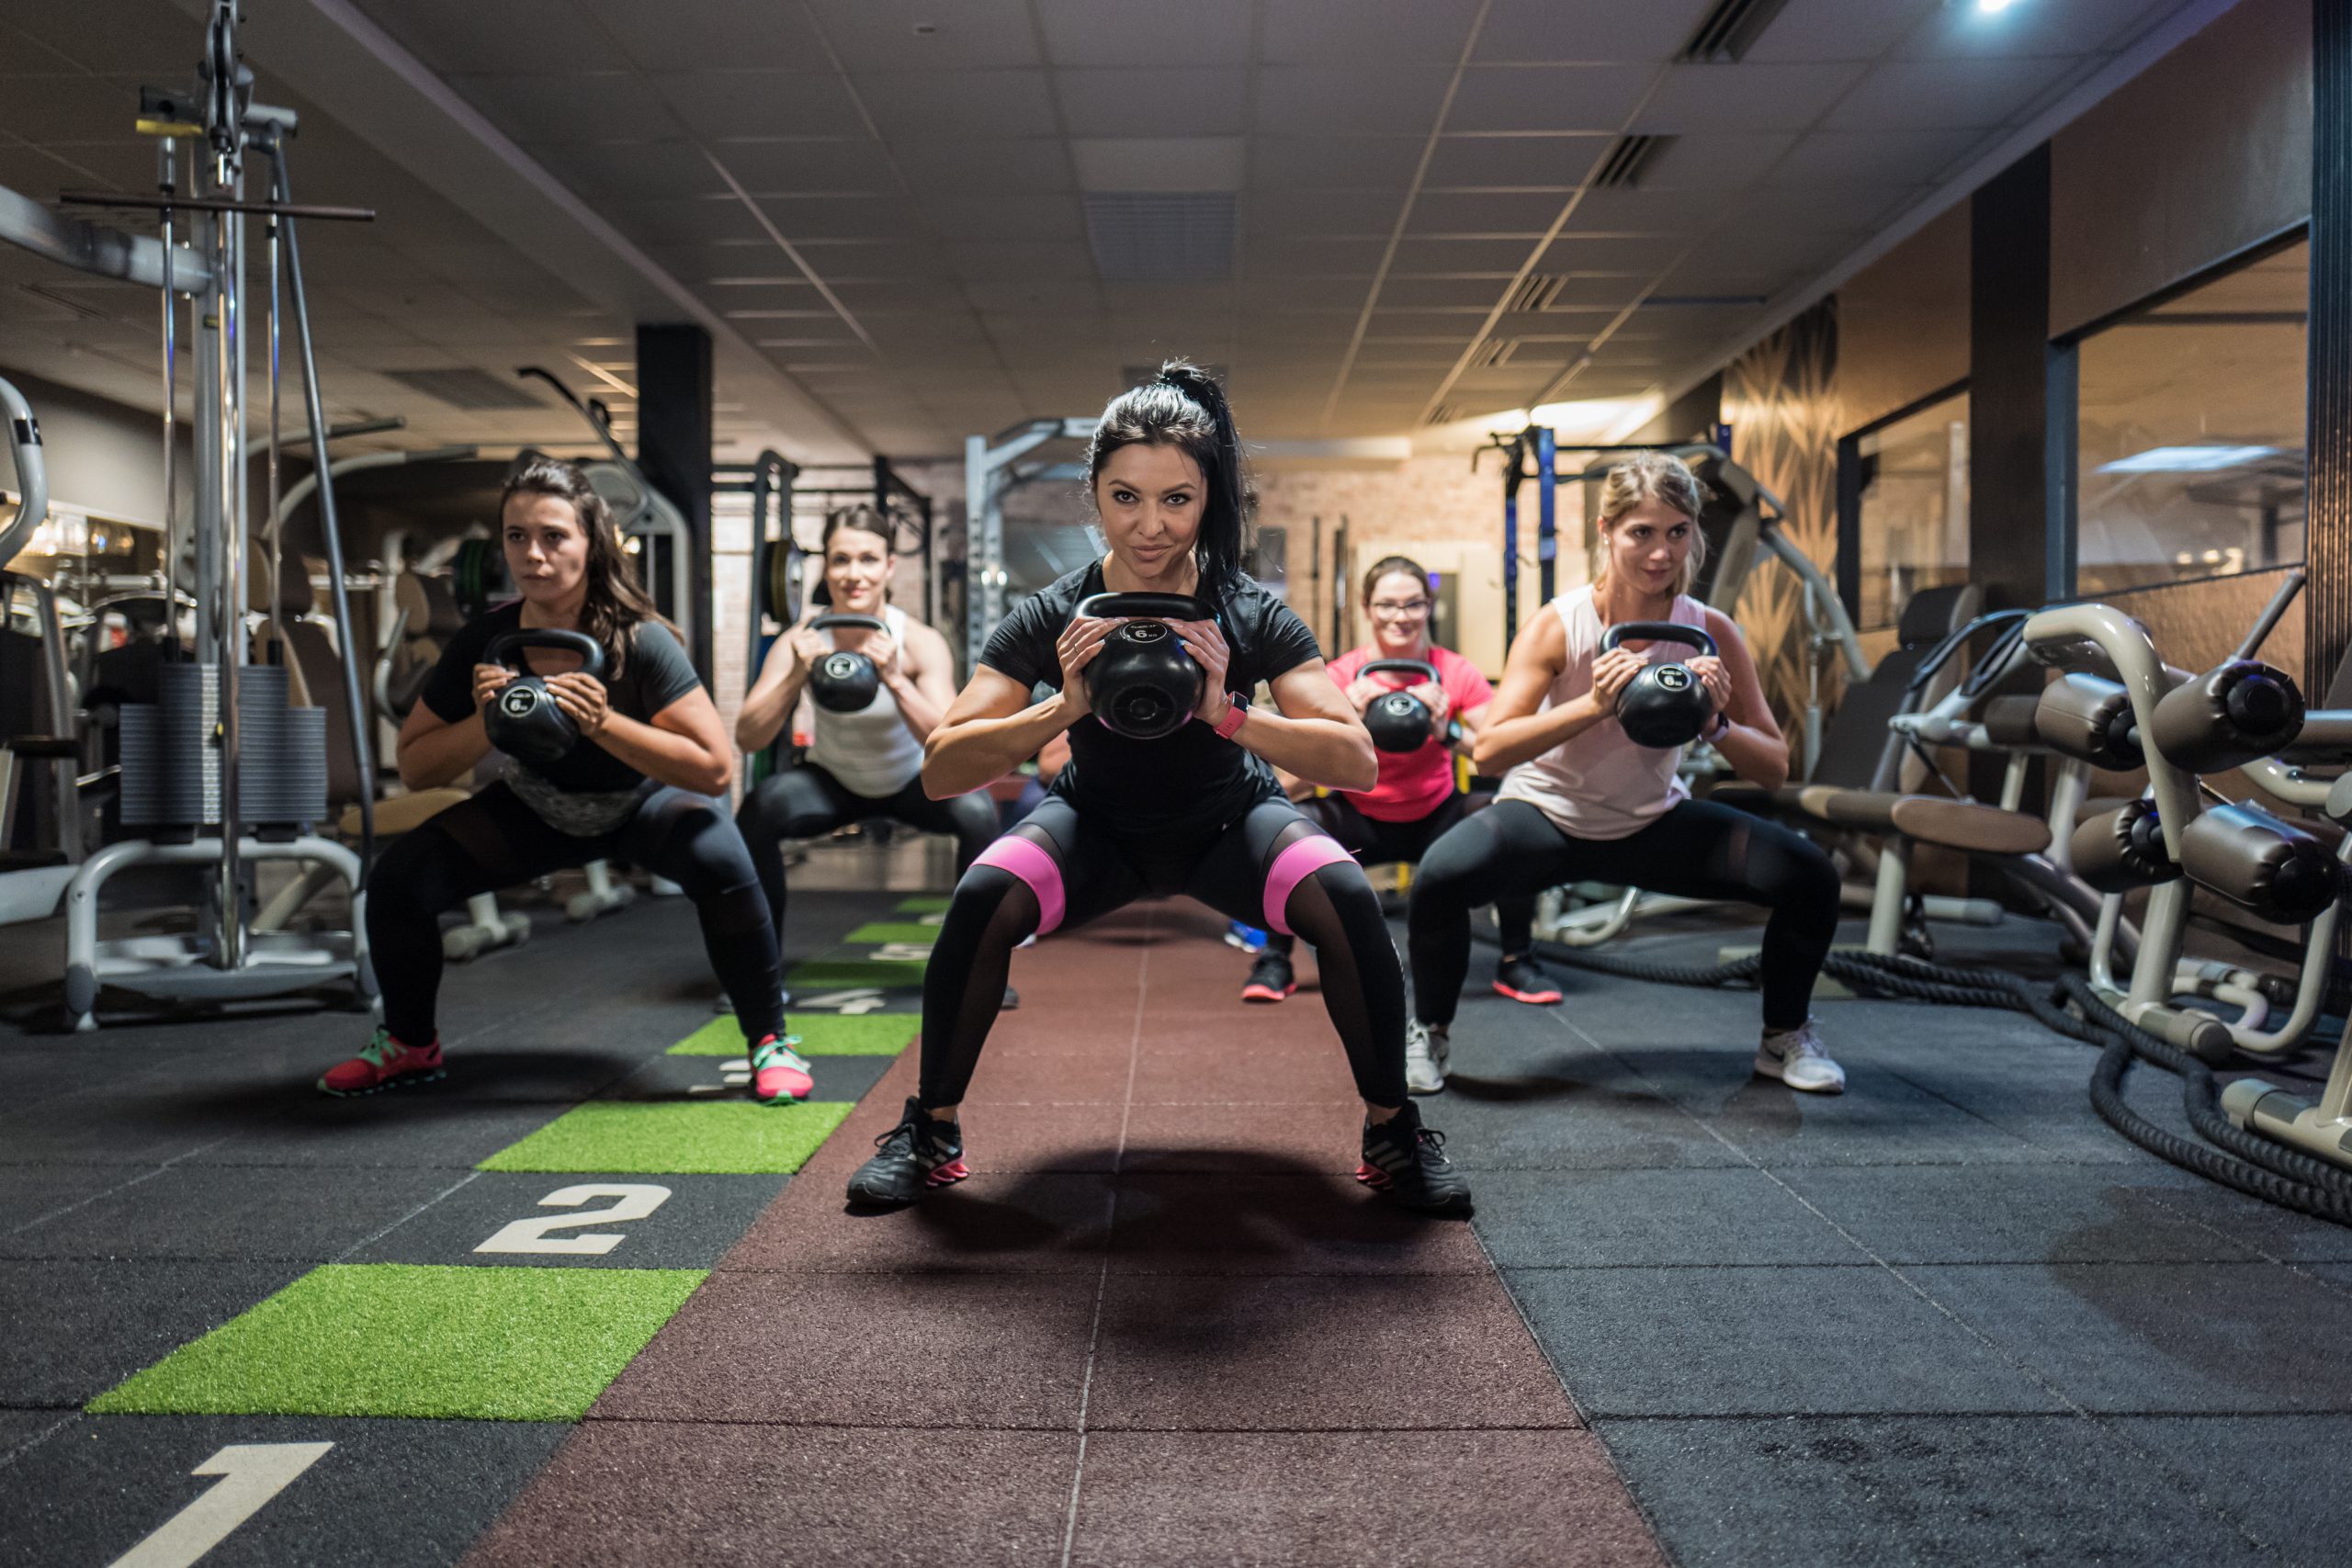 Fotoshooting im Studio21 in Nürnberg mit Fitness Model Oxana und einigen sportlichen Mädels auf der Trainingsfläche